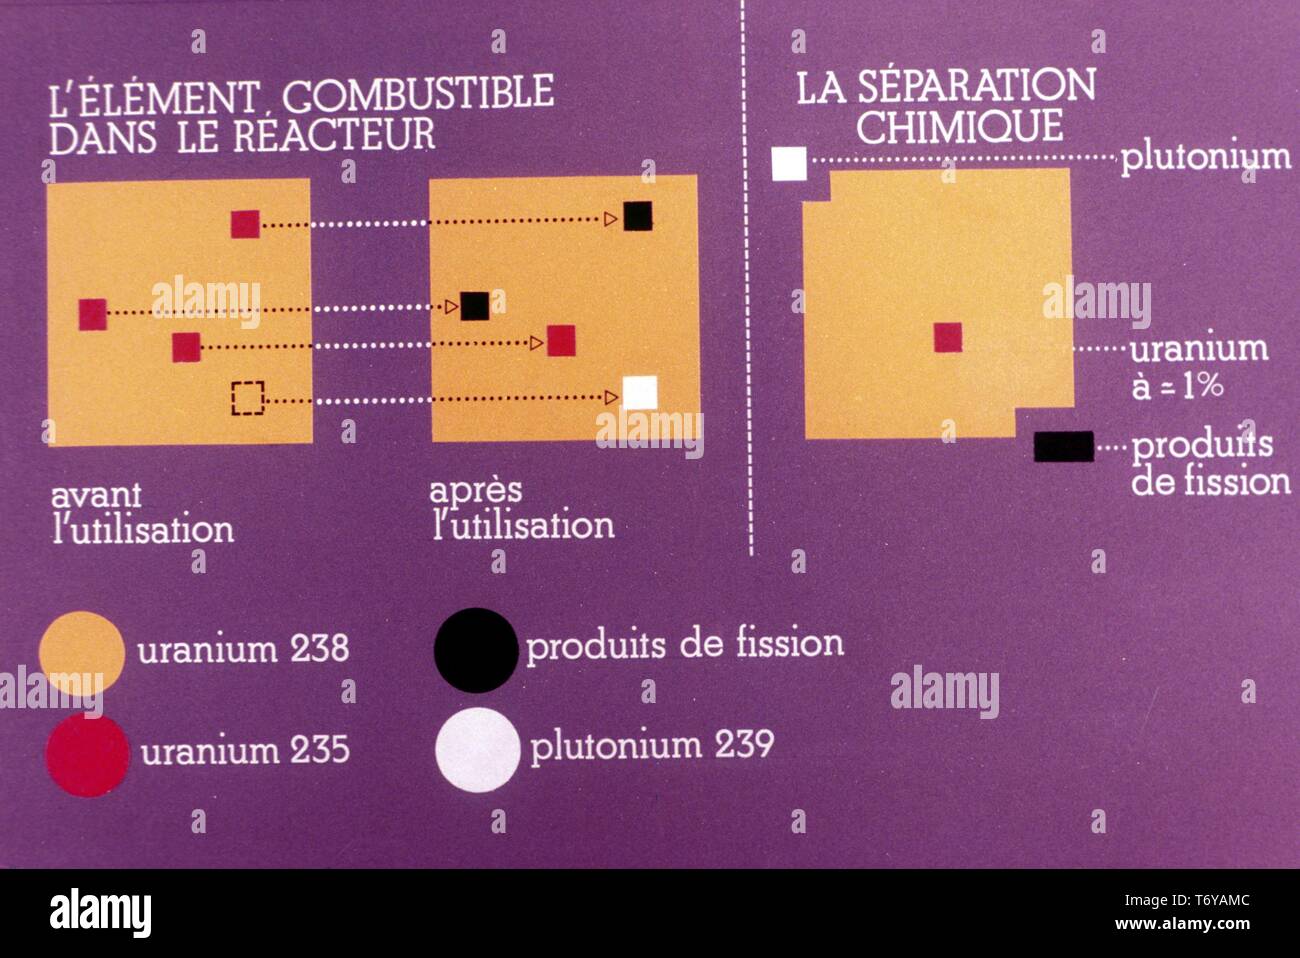 Schaltplan, in französischer Sprache beschriftet, die den Prozess der Kernspaltung in der Kernenergie, 1980. Mit freundlicher Genehmigung des US-Ministeriums für Energie. () Stockfoto